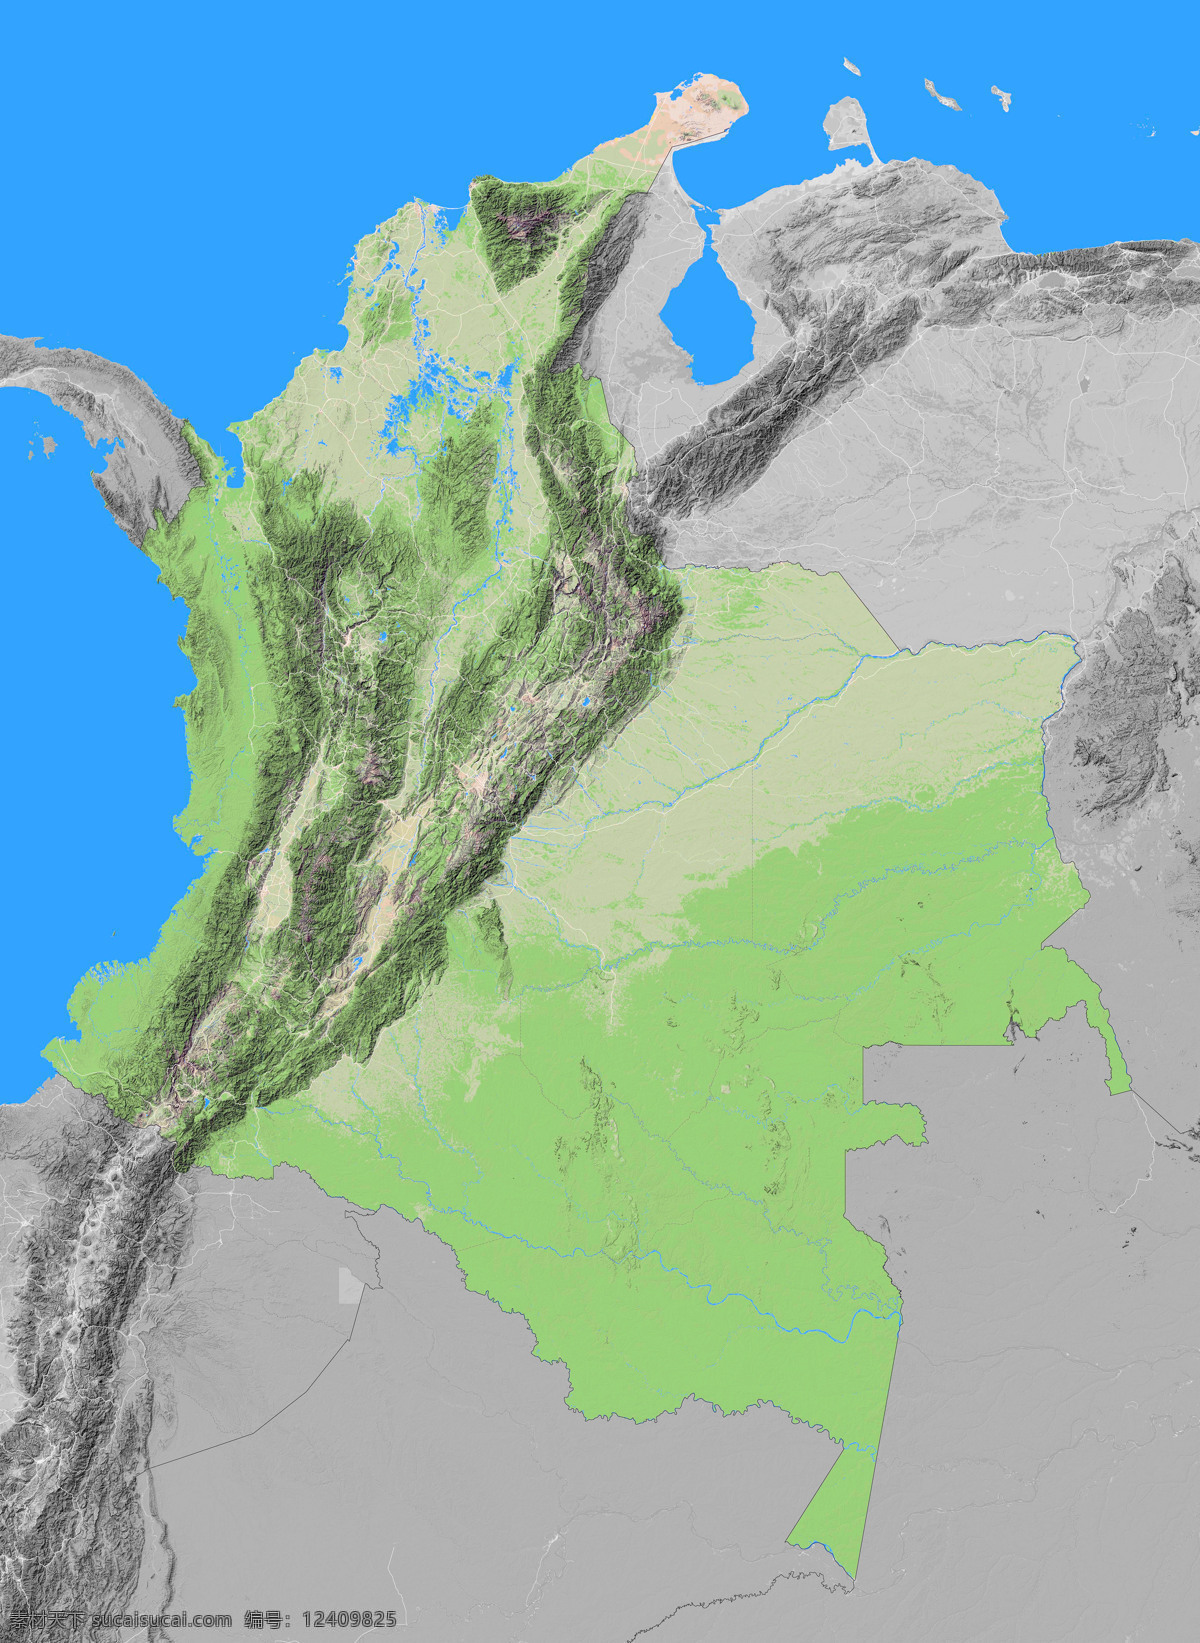 哥伦比亚 地形图 亚洲 欧洲 非洲 美洲 澳洲 南极洲 上帝之眼 卫星图 俯视图 nasa 地中海 海洋 山地 西西里岛 撒丁岛 阿尔卑斯山 南欧 东欧 地球 自然景观 自然风景